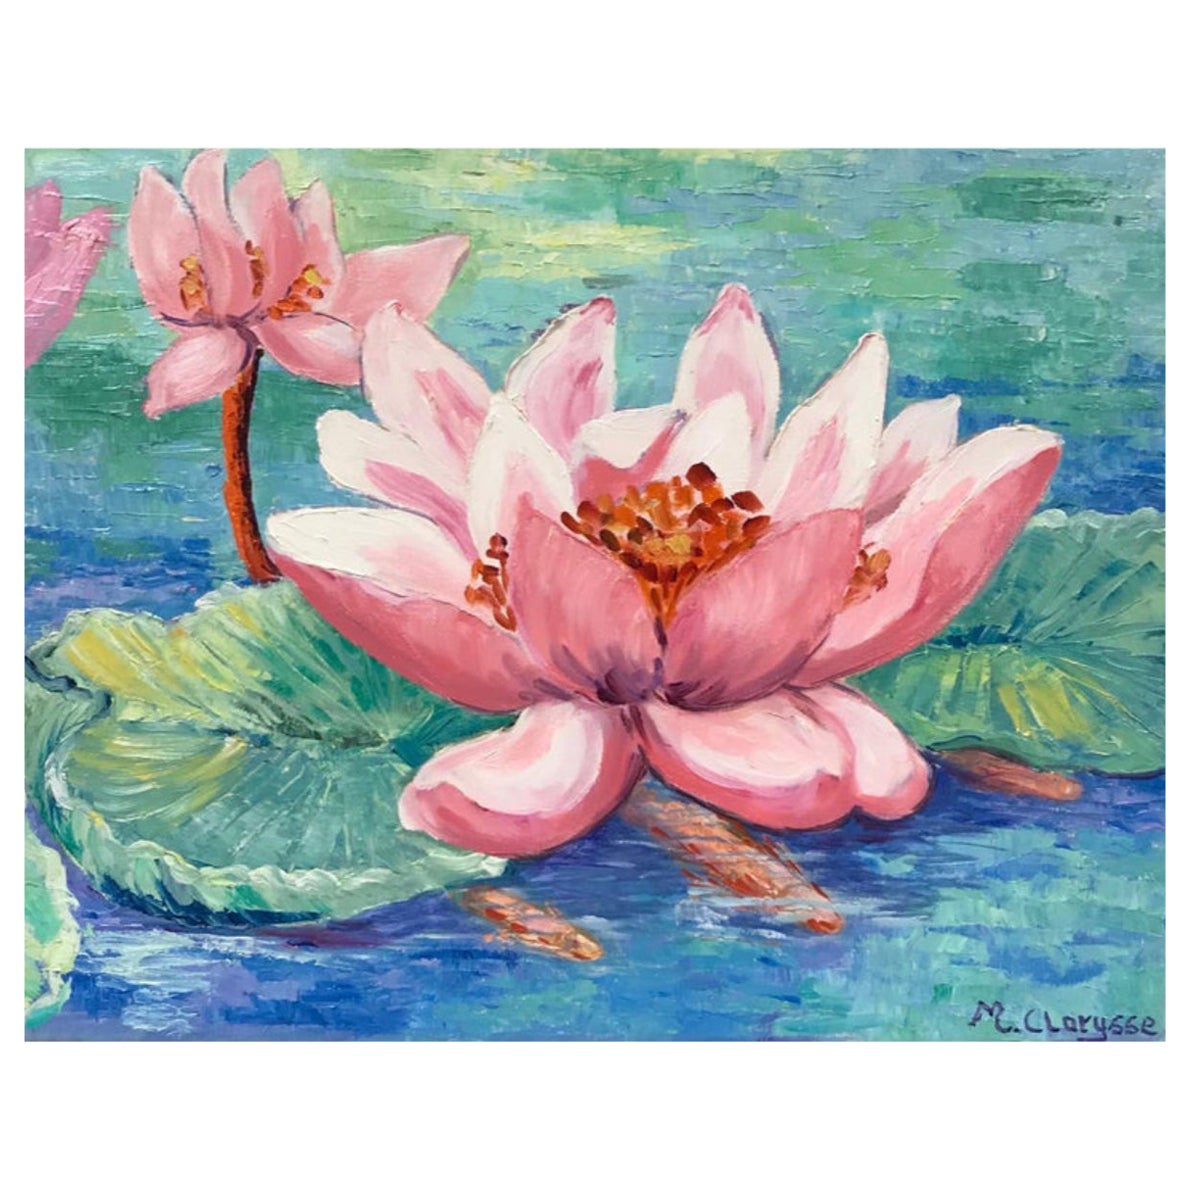 Leuchtend und farbenfrohes französisches impressionistisches Ölgemälde, rosa Lilien